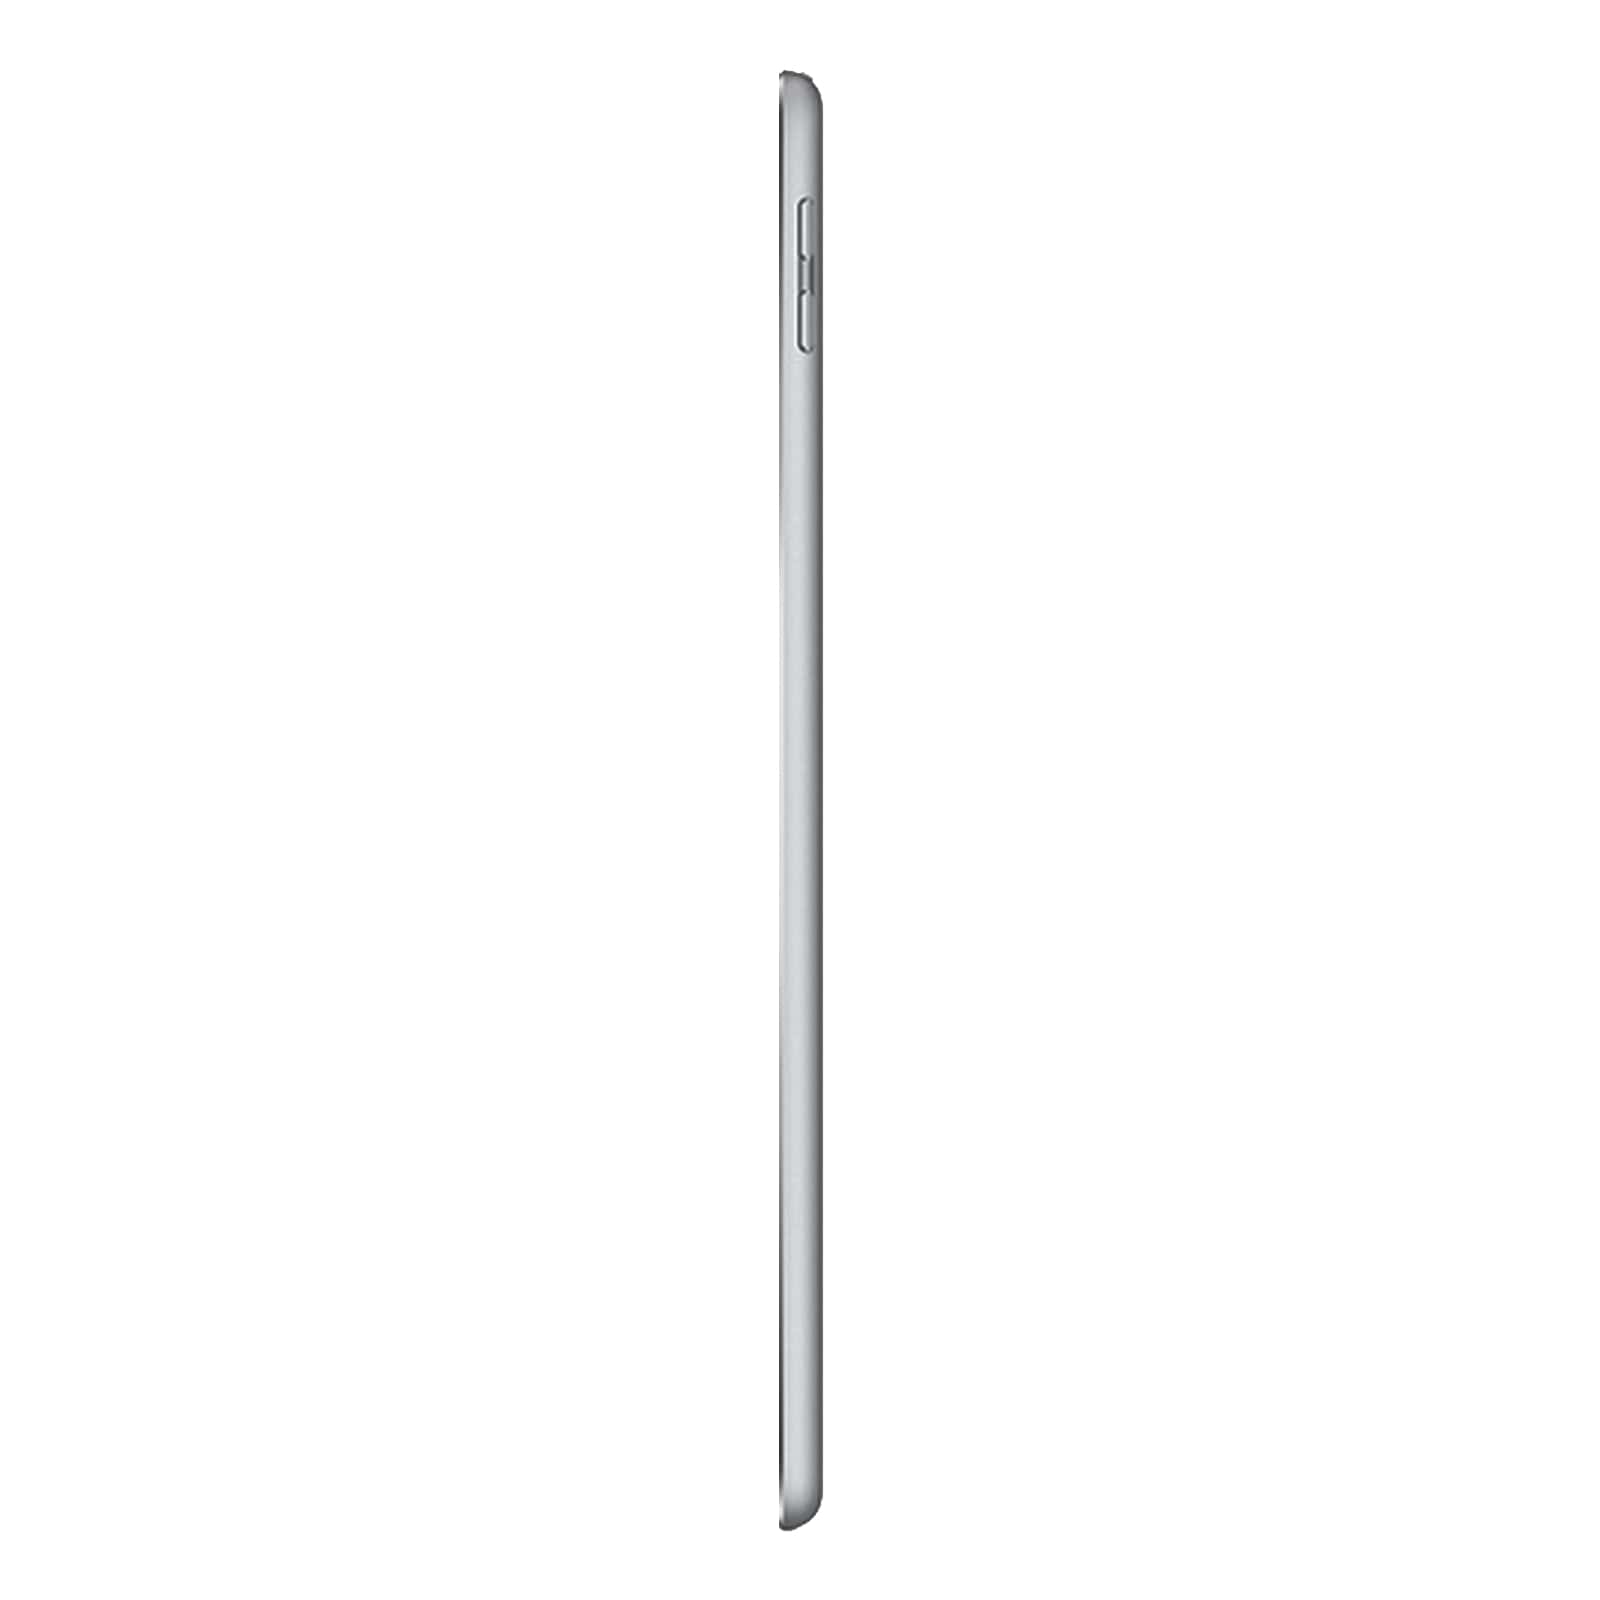 iPad 6 128GB Space Grey Good - WiFi